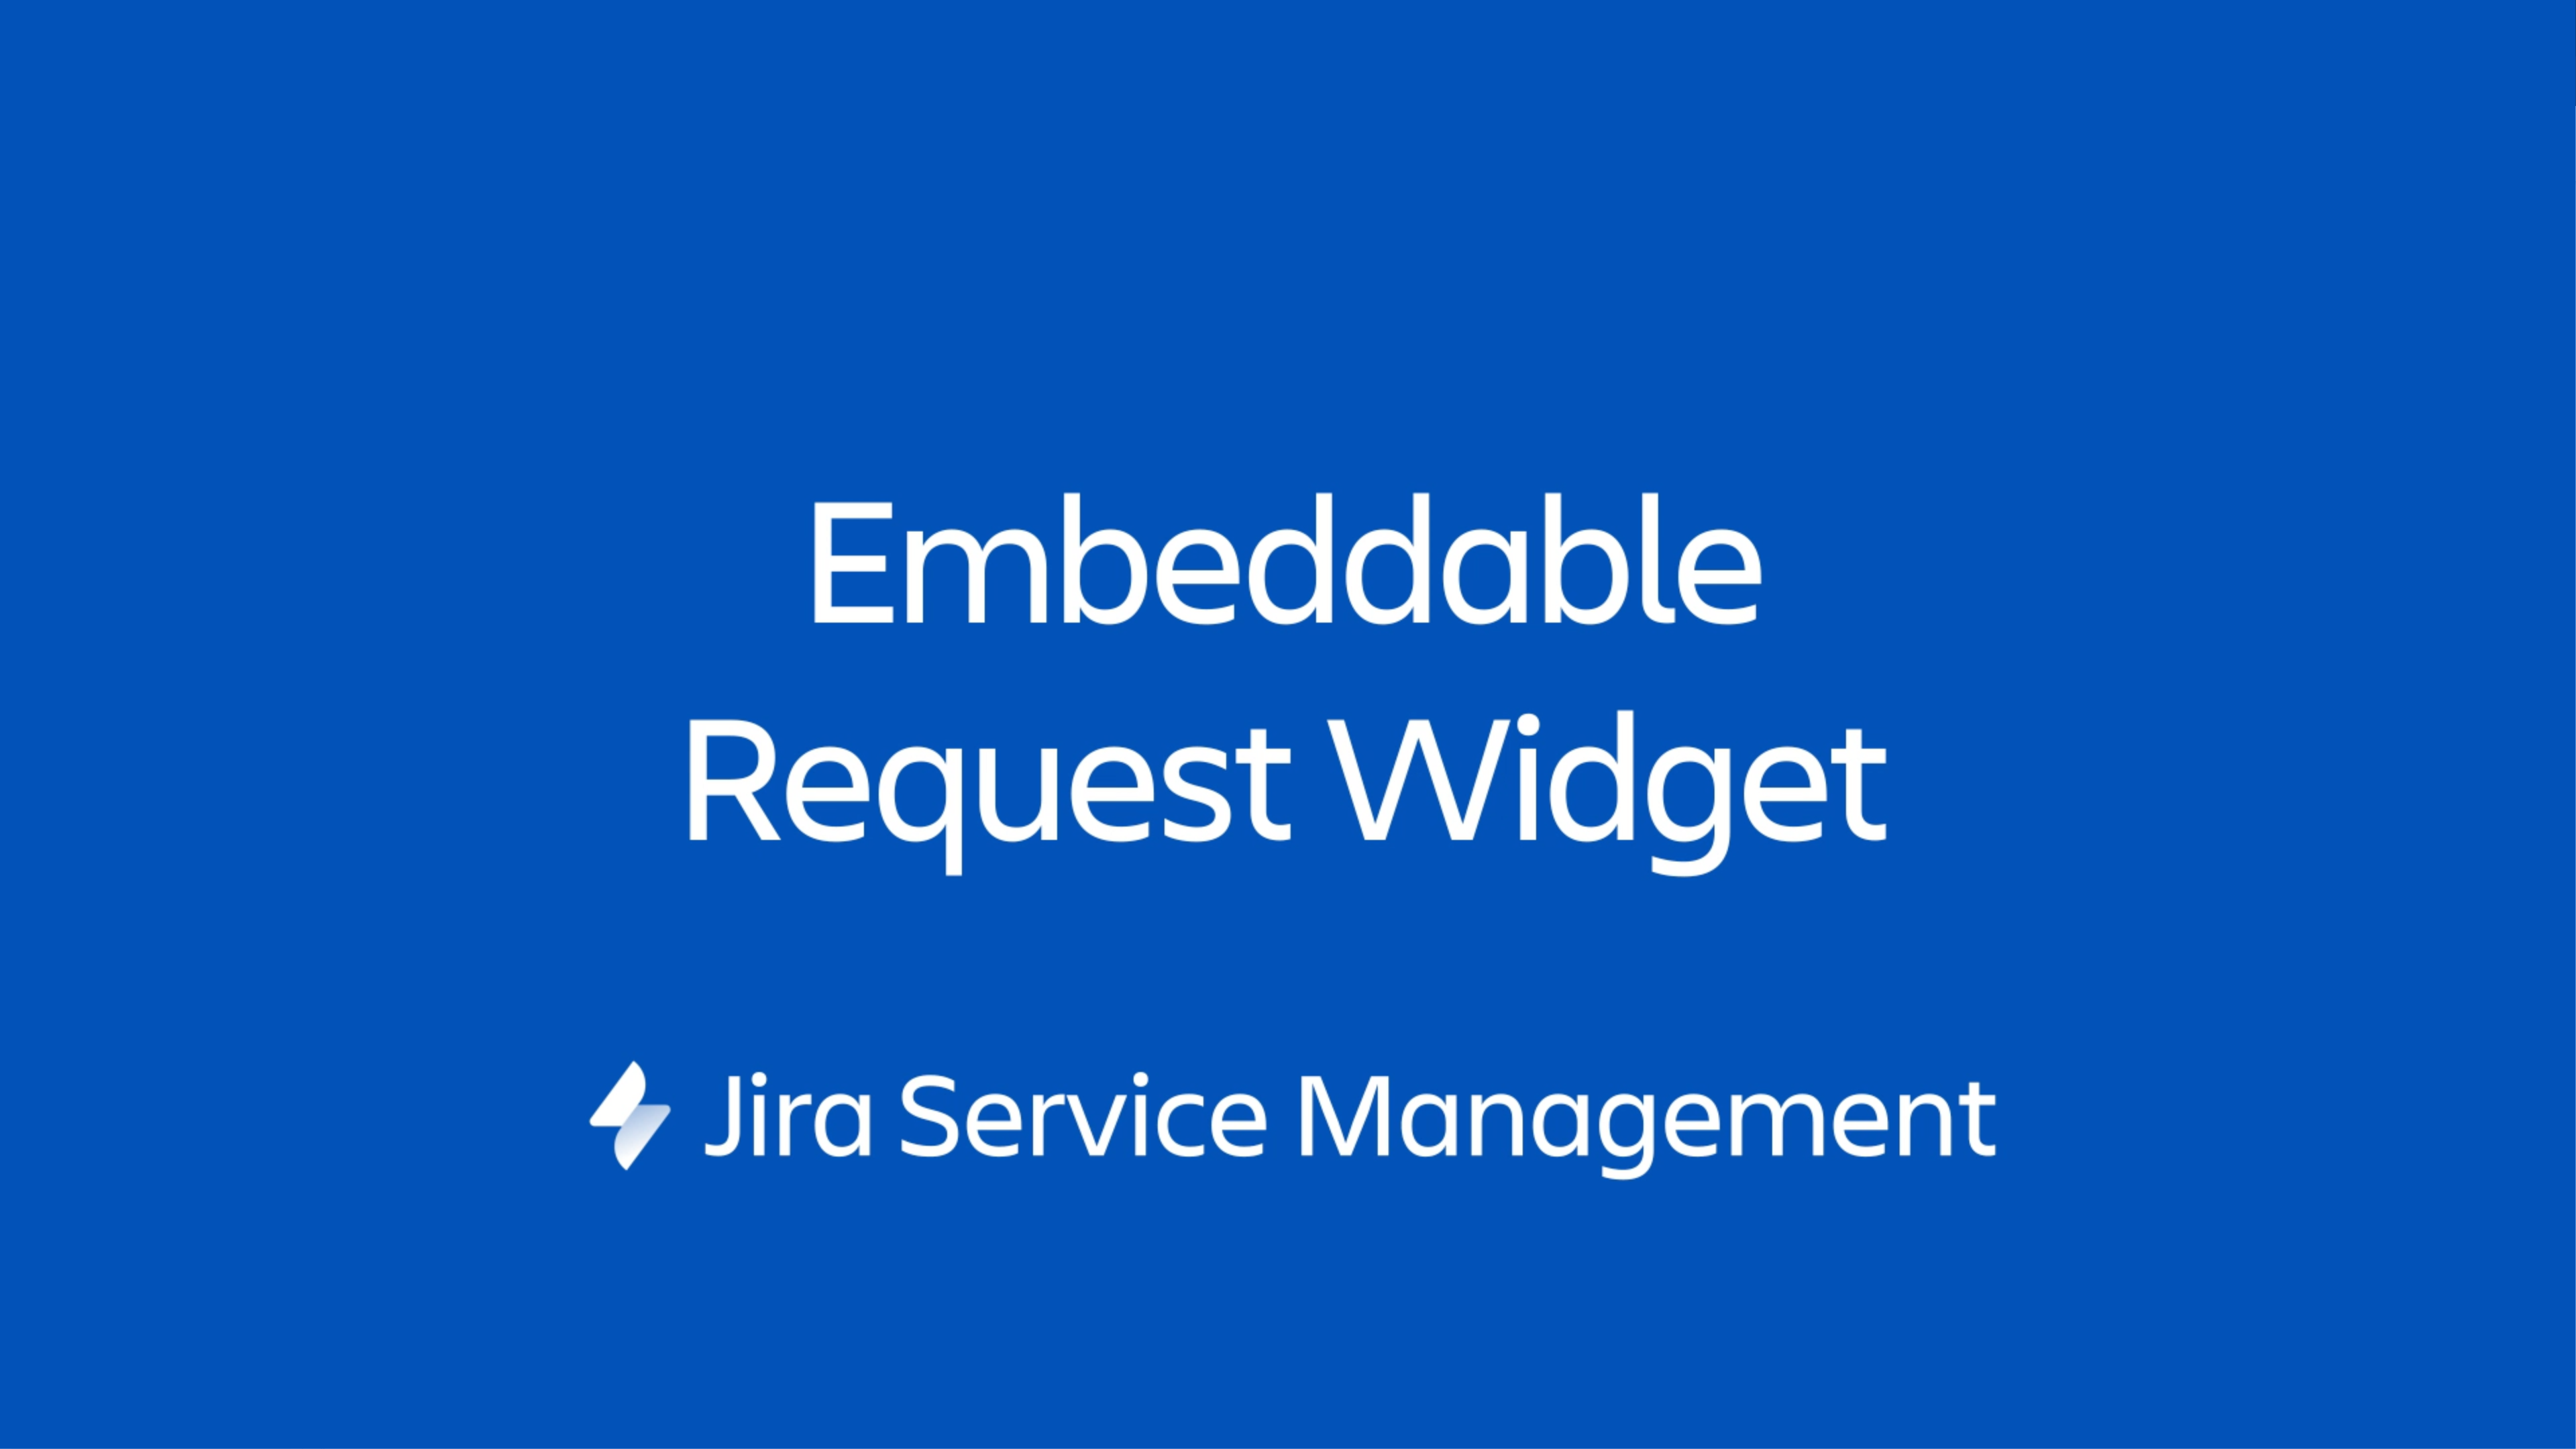 Jira Service Management ウィジェットは、ユーザーが管理する Web ページ上に埋め込むことができるミニポータルです。